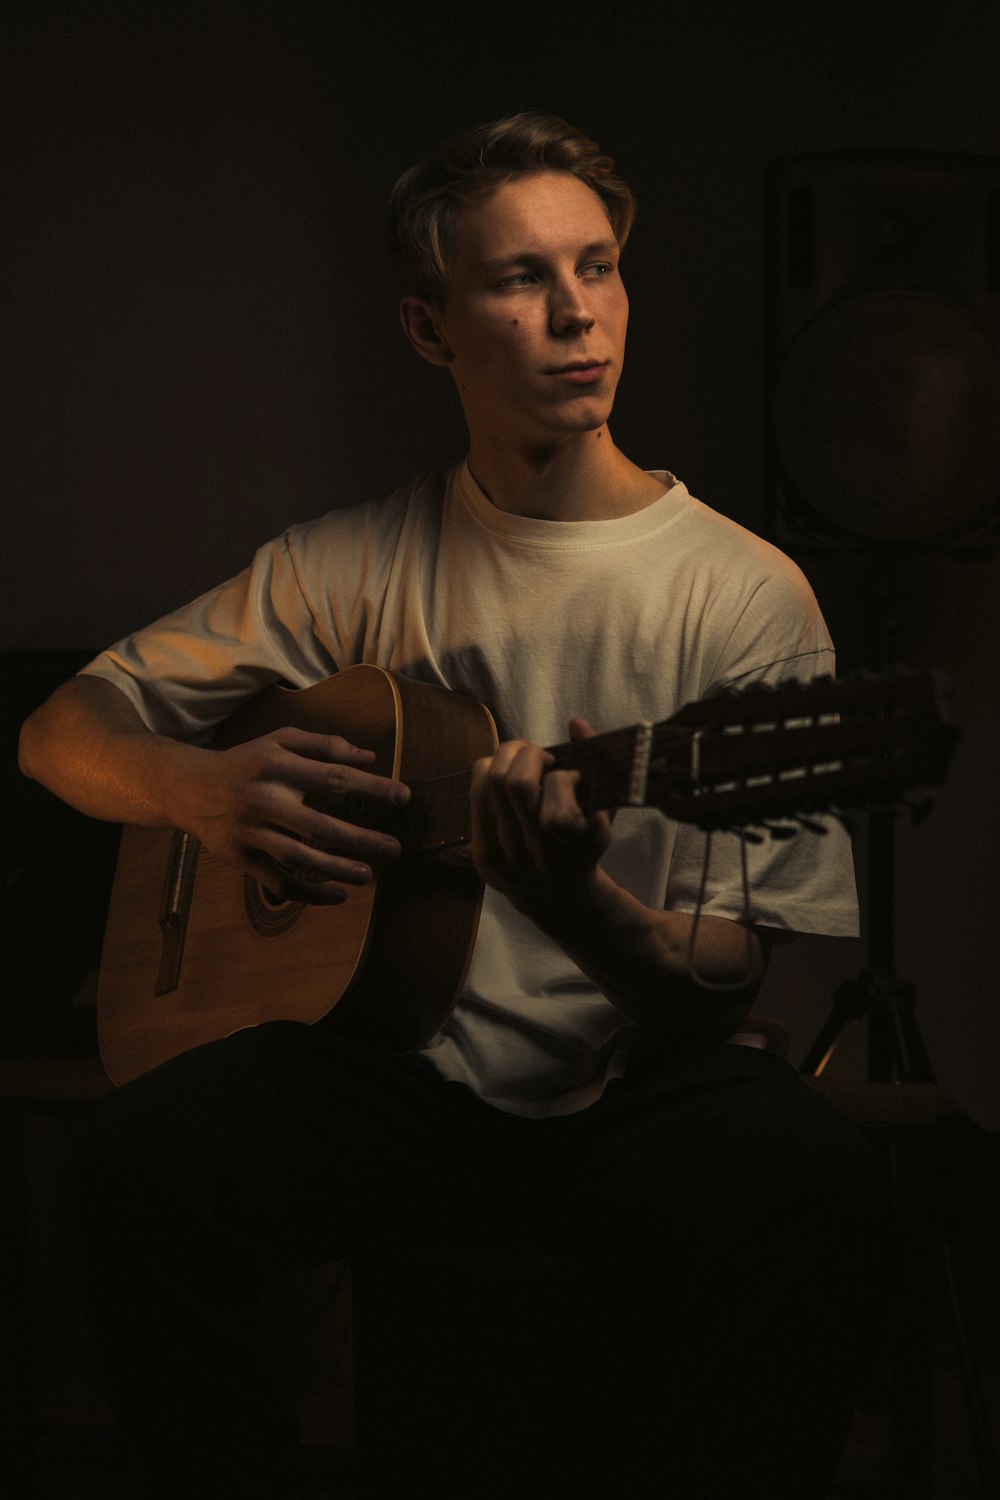 Un homme jouant de la guitare dans une pièce sombre